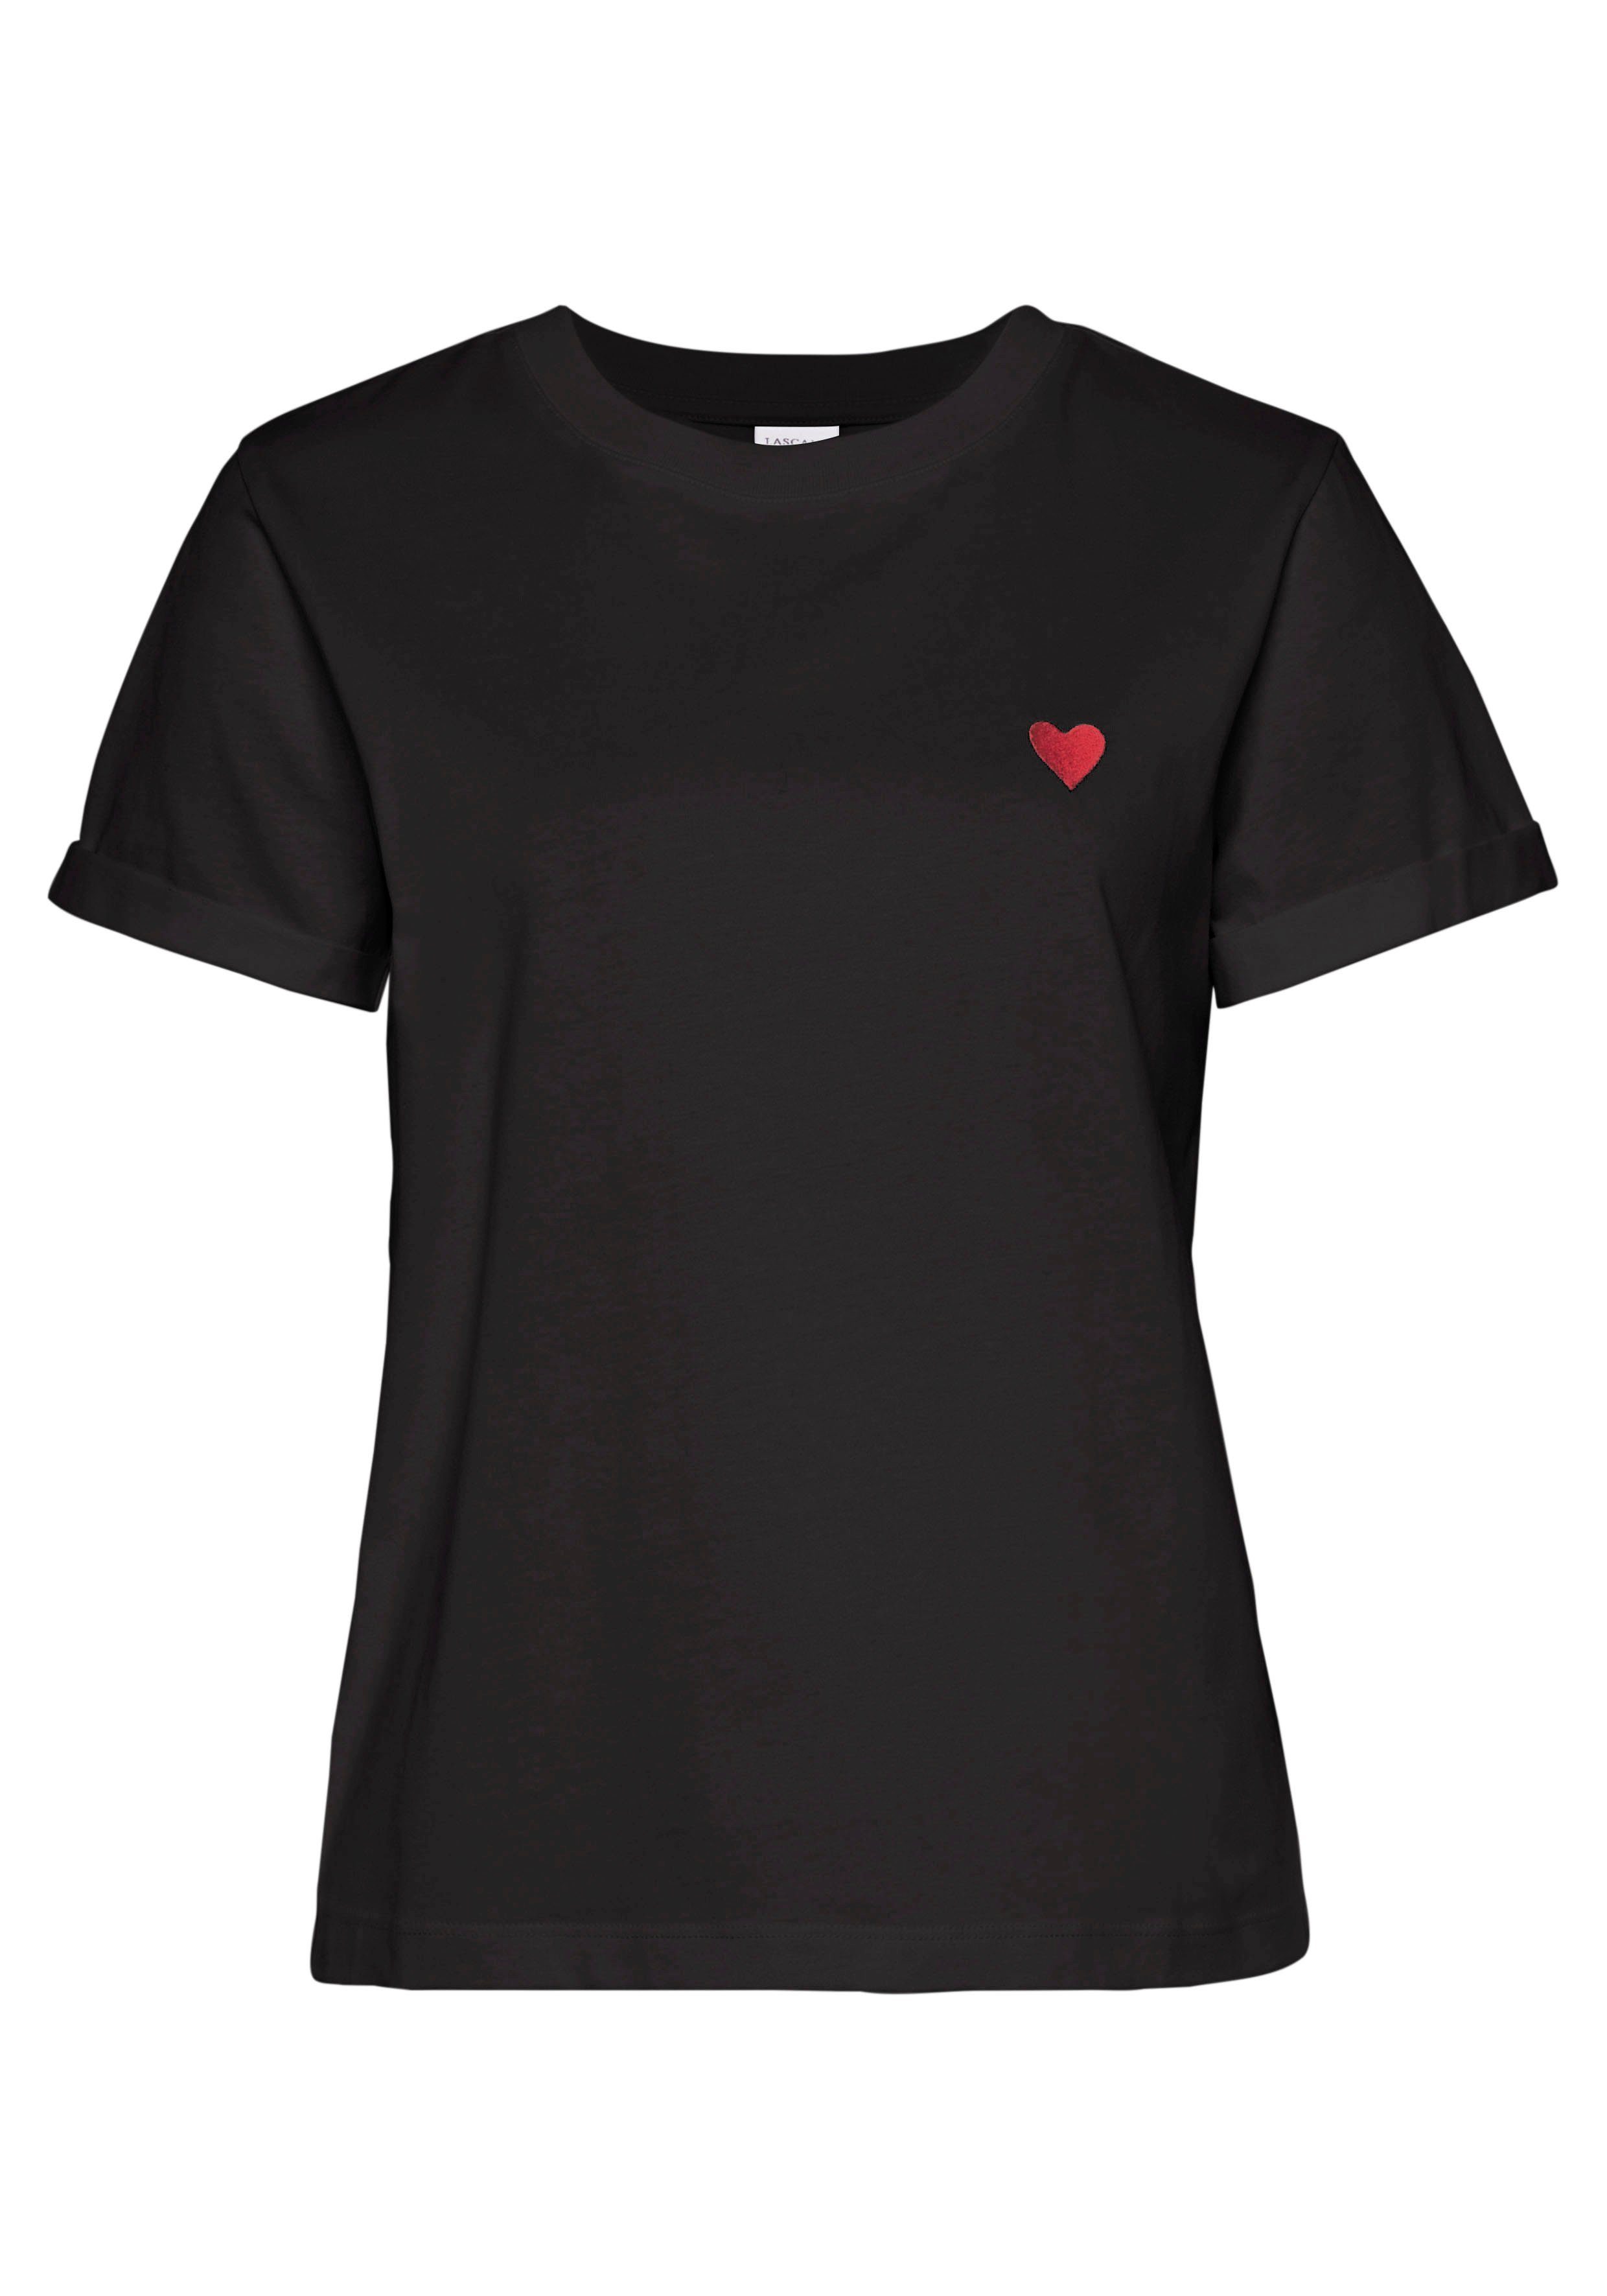 Kurzarmshirt süßer T-Shirt Baumwolle Herz-Stickerei, mit schwarz LASCANA aus